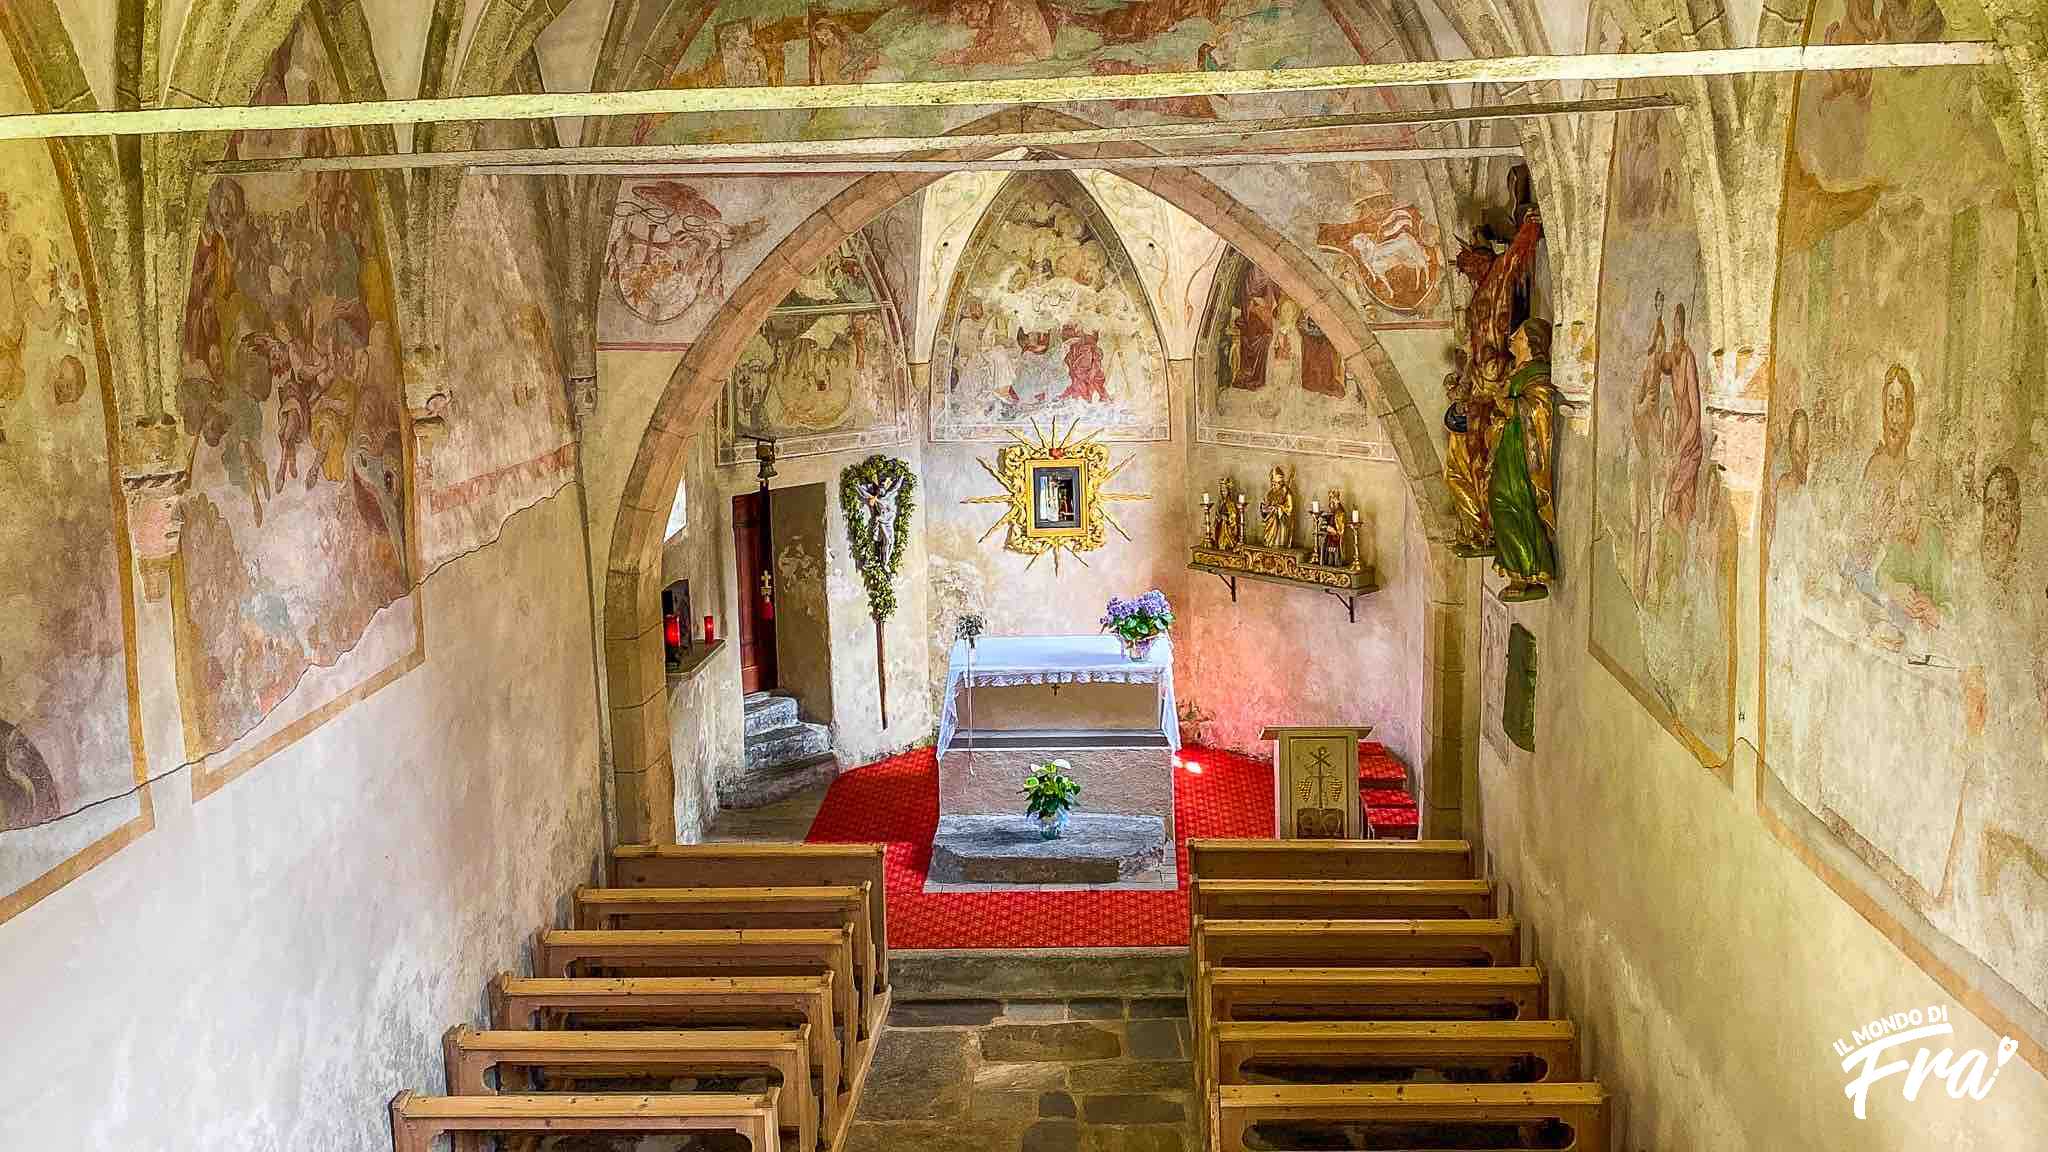 Chiesetta del Santo Spirito - Predoi - Casere - Valle Aurina - Alto Adige